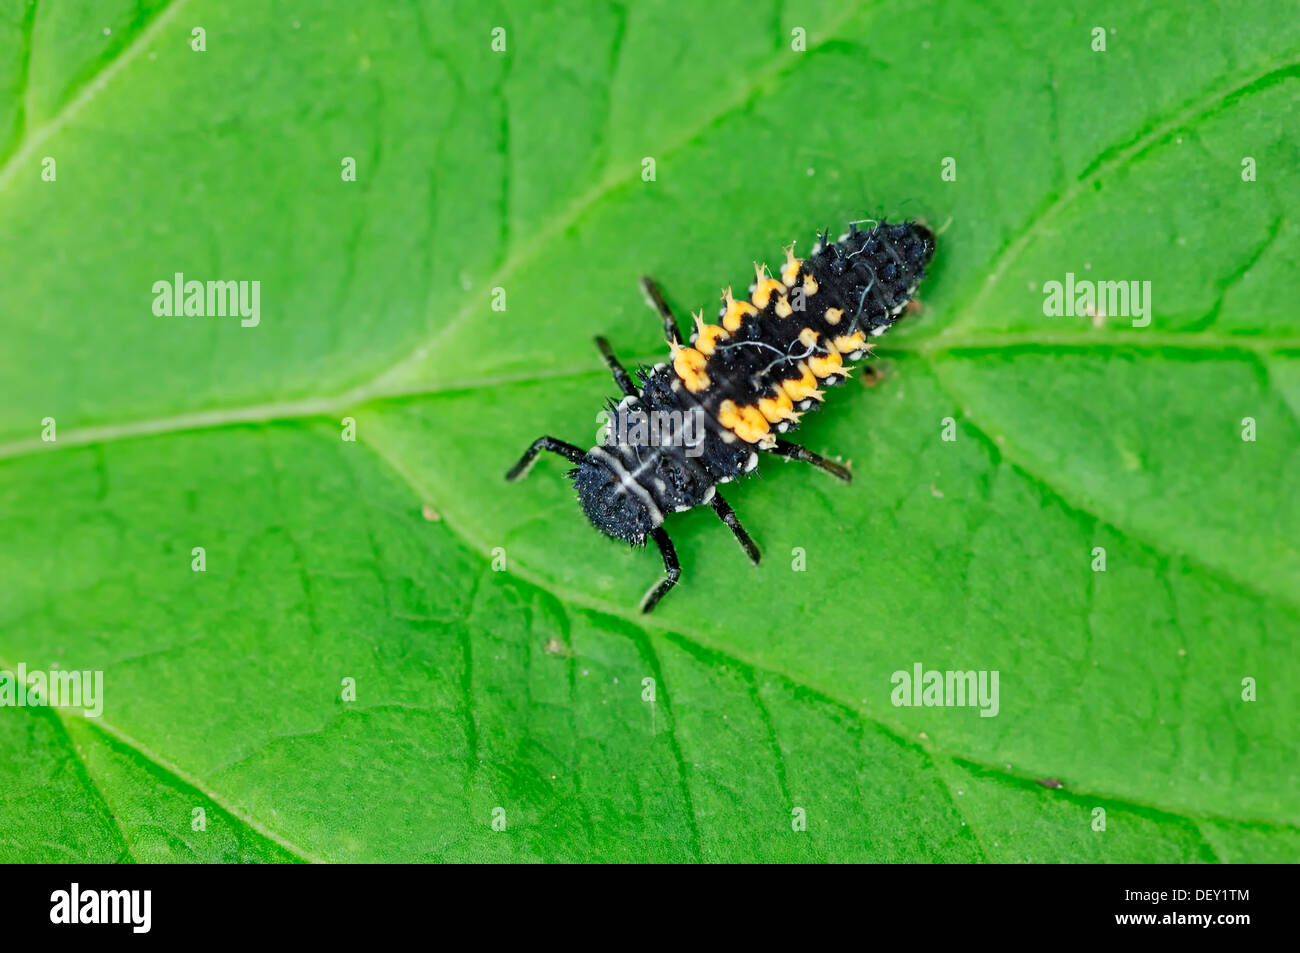 Señora asiática Harmonia axyridis (escarabajos), larva, Renania del Norte-Westfalia Foto de stock